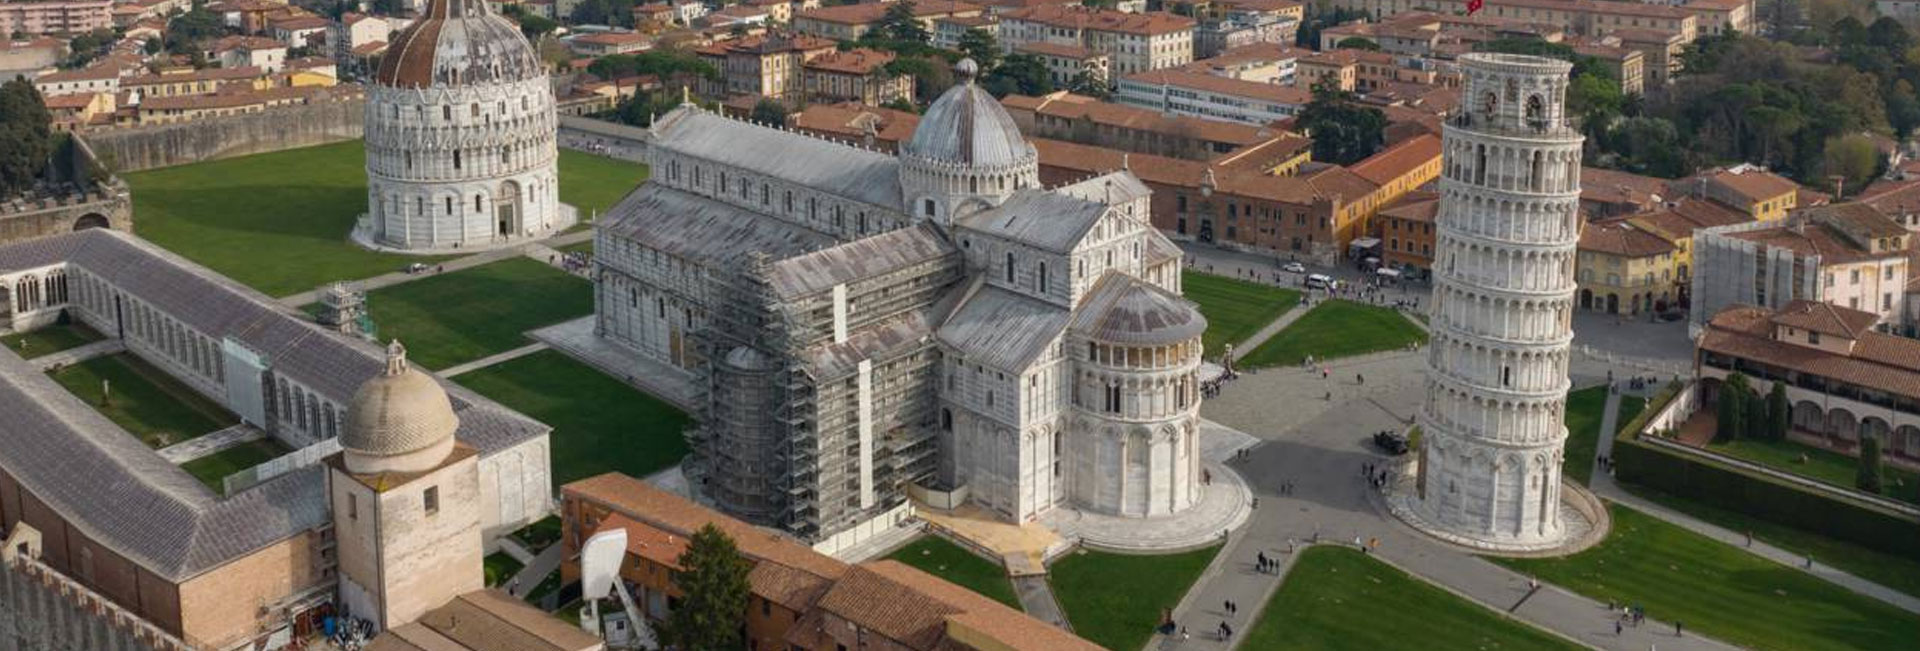 Si la Torre de Pisa se inclina, es por culpa del suelo